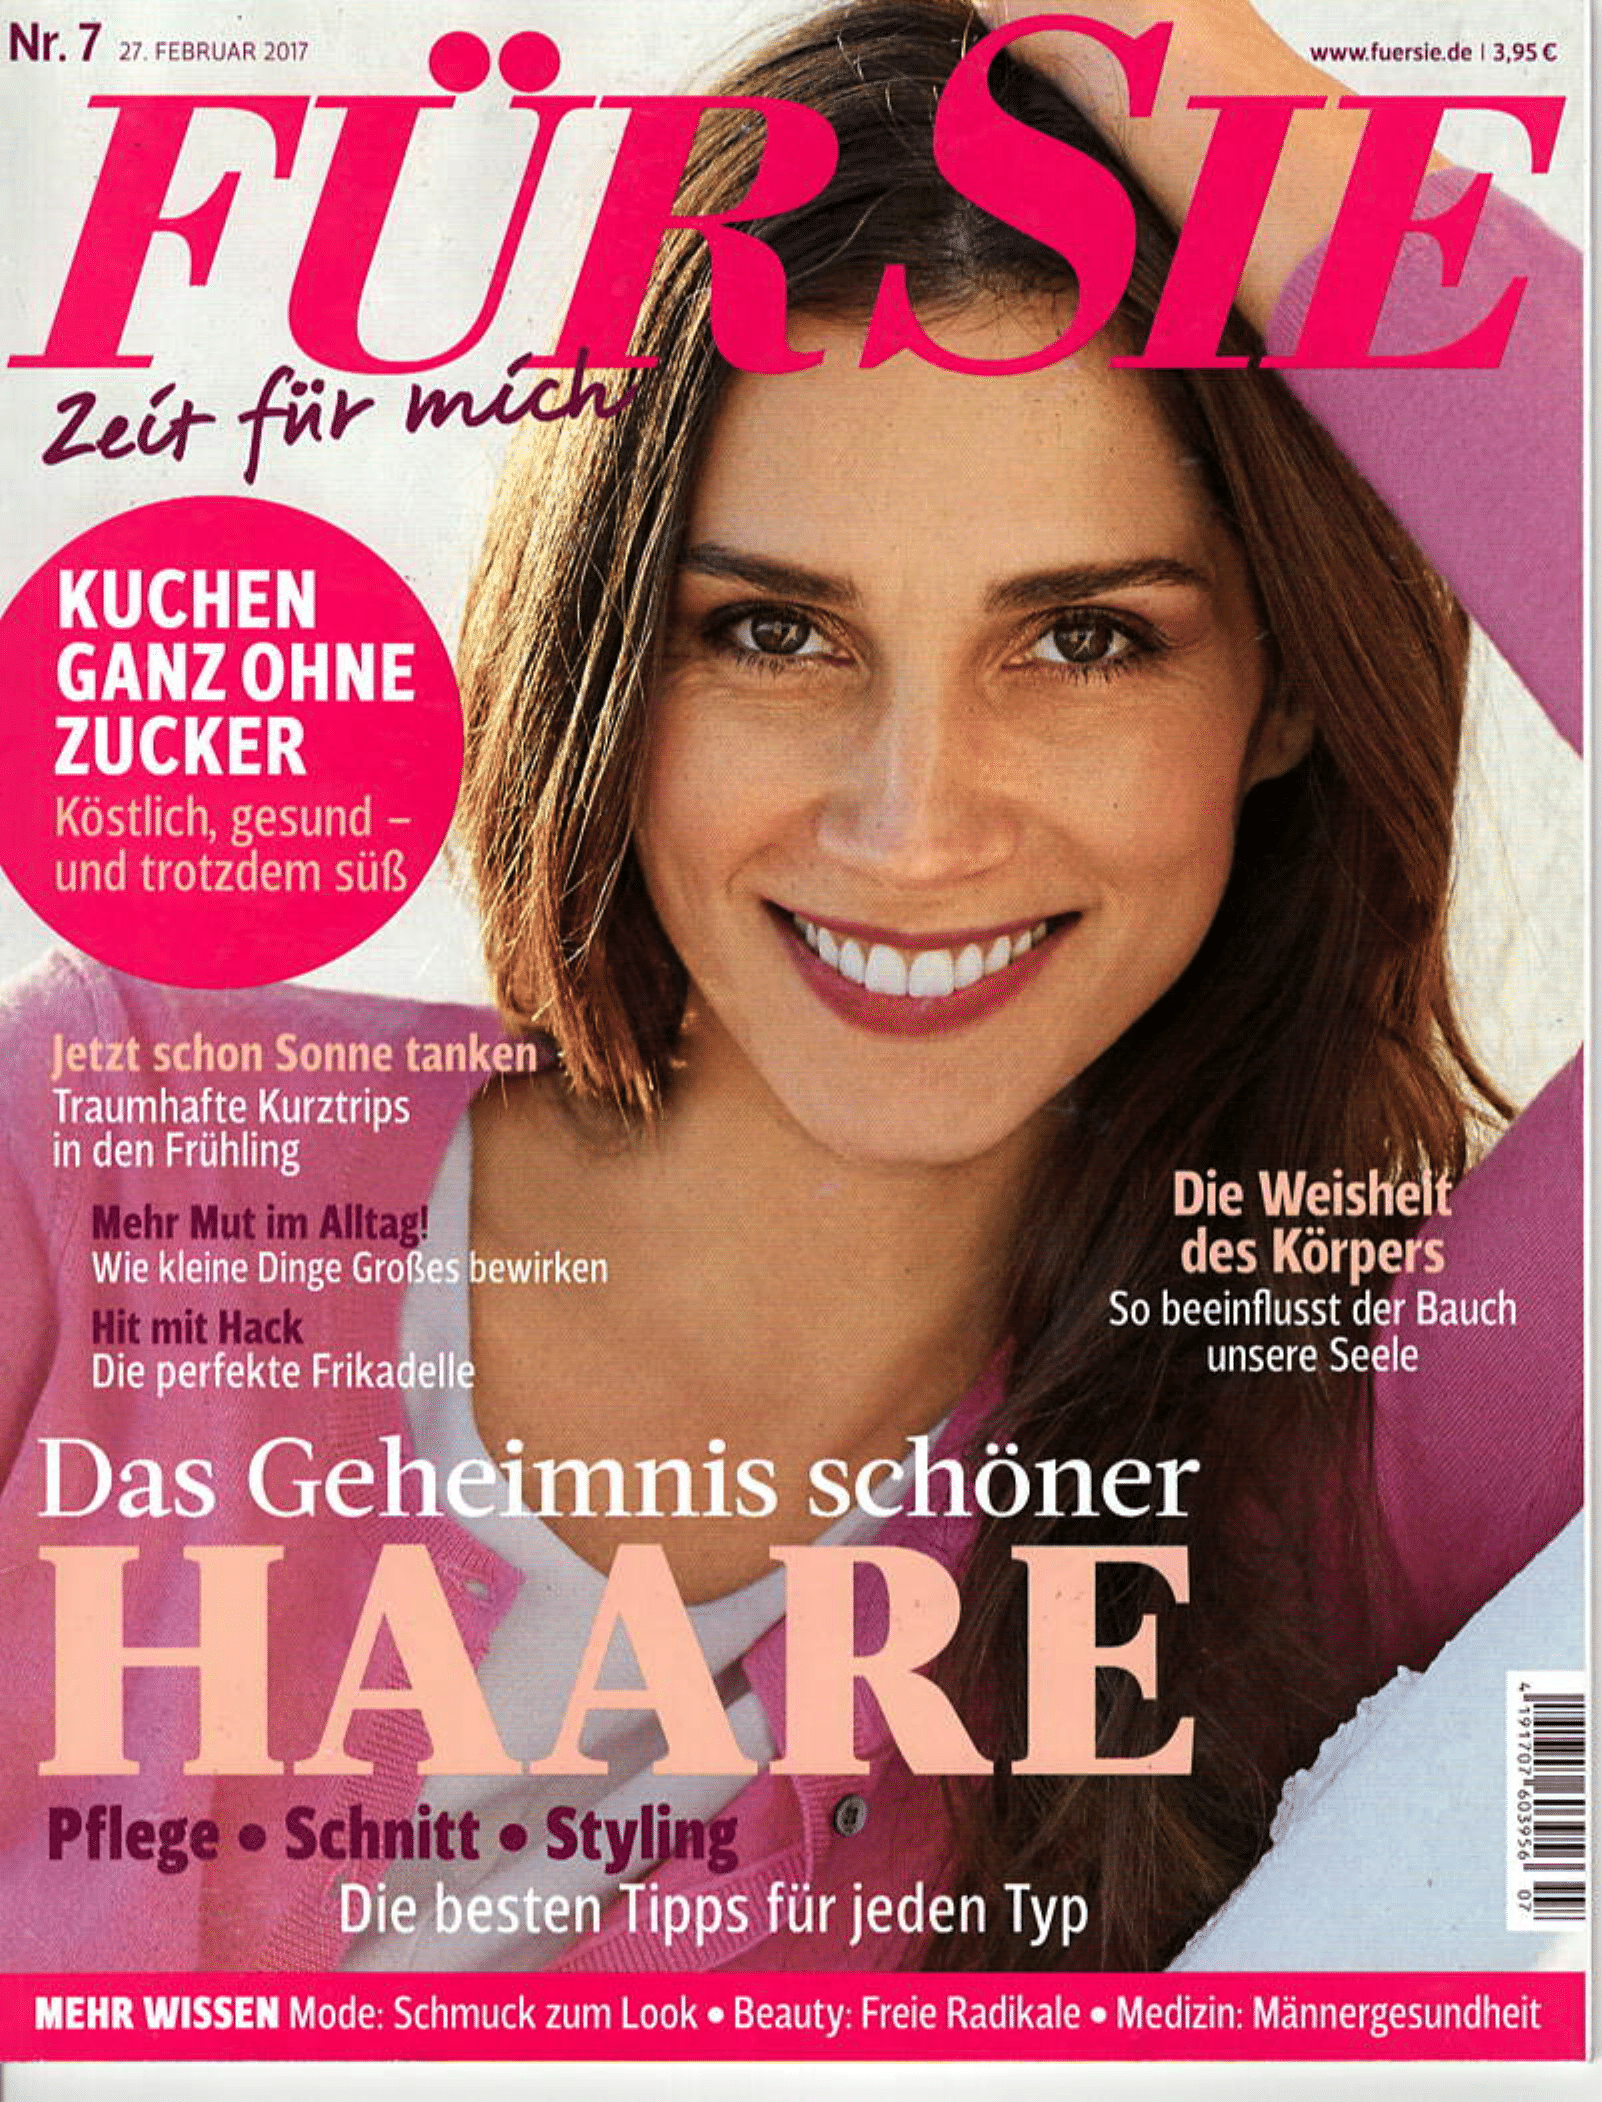 ABURY featured in FürSie Magazine